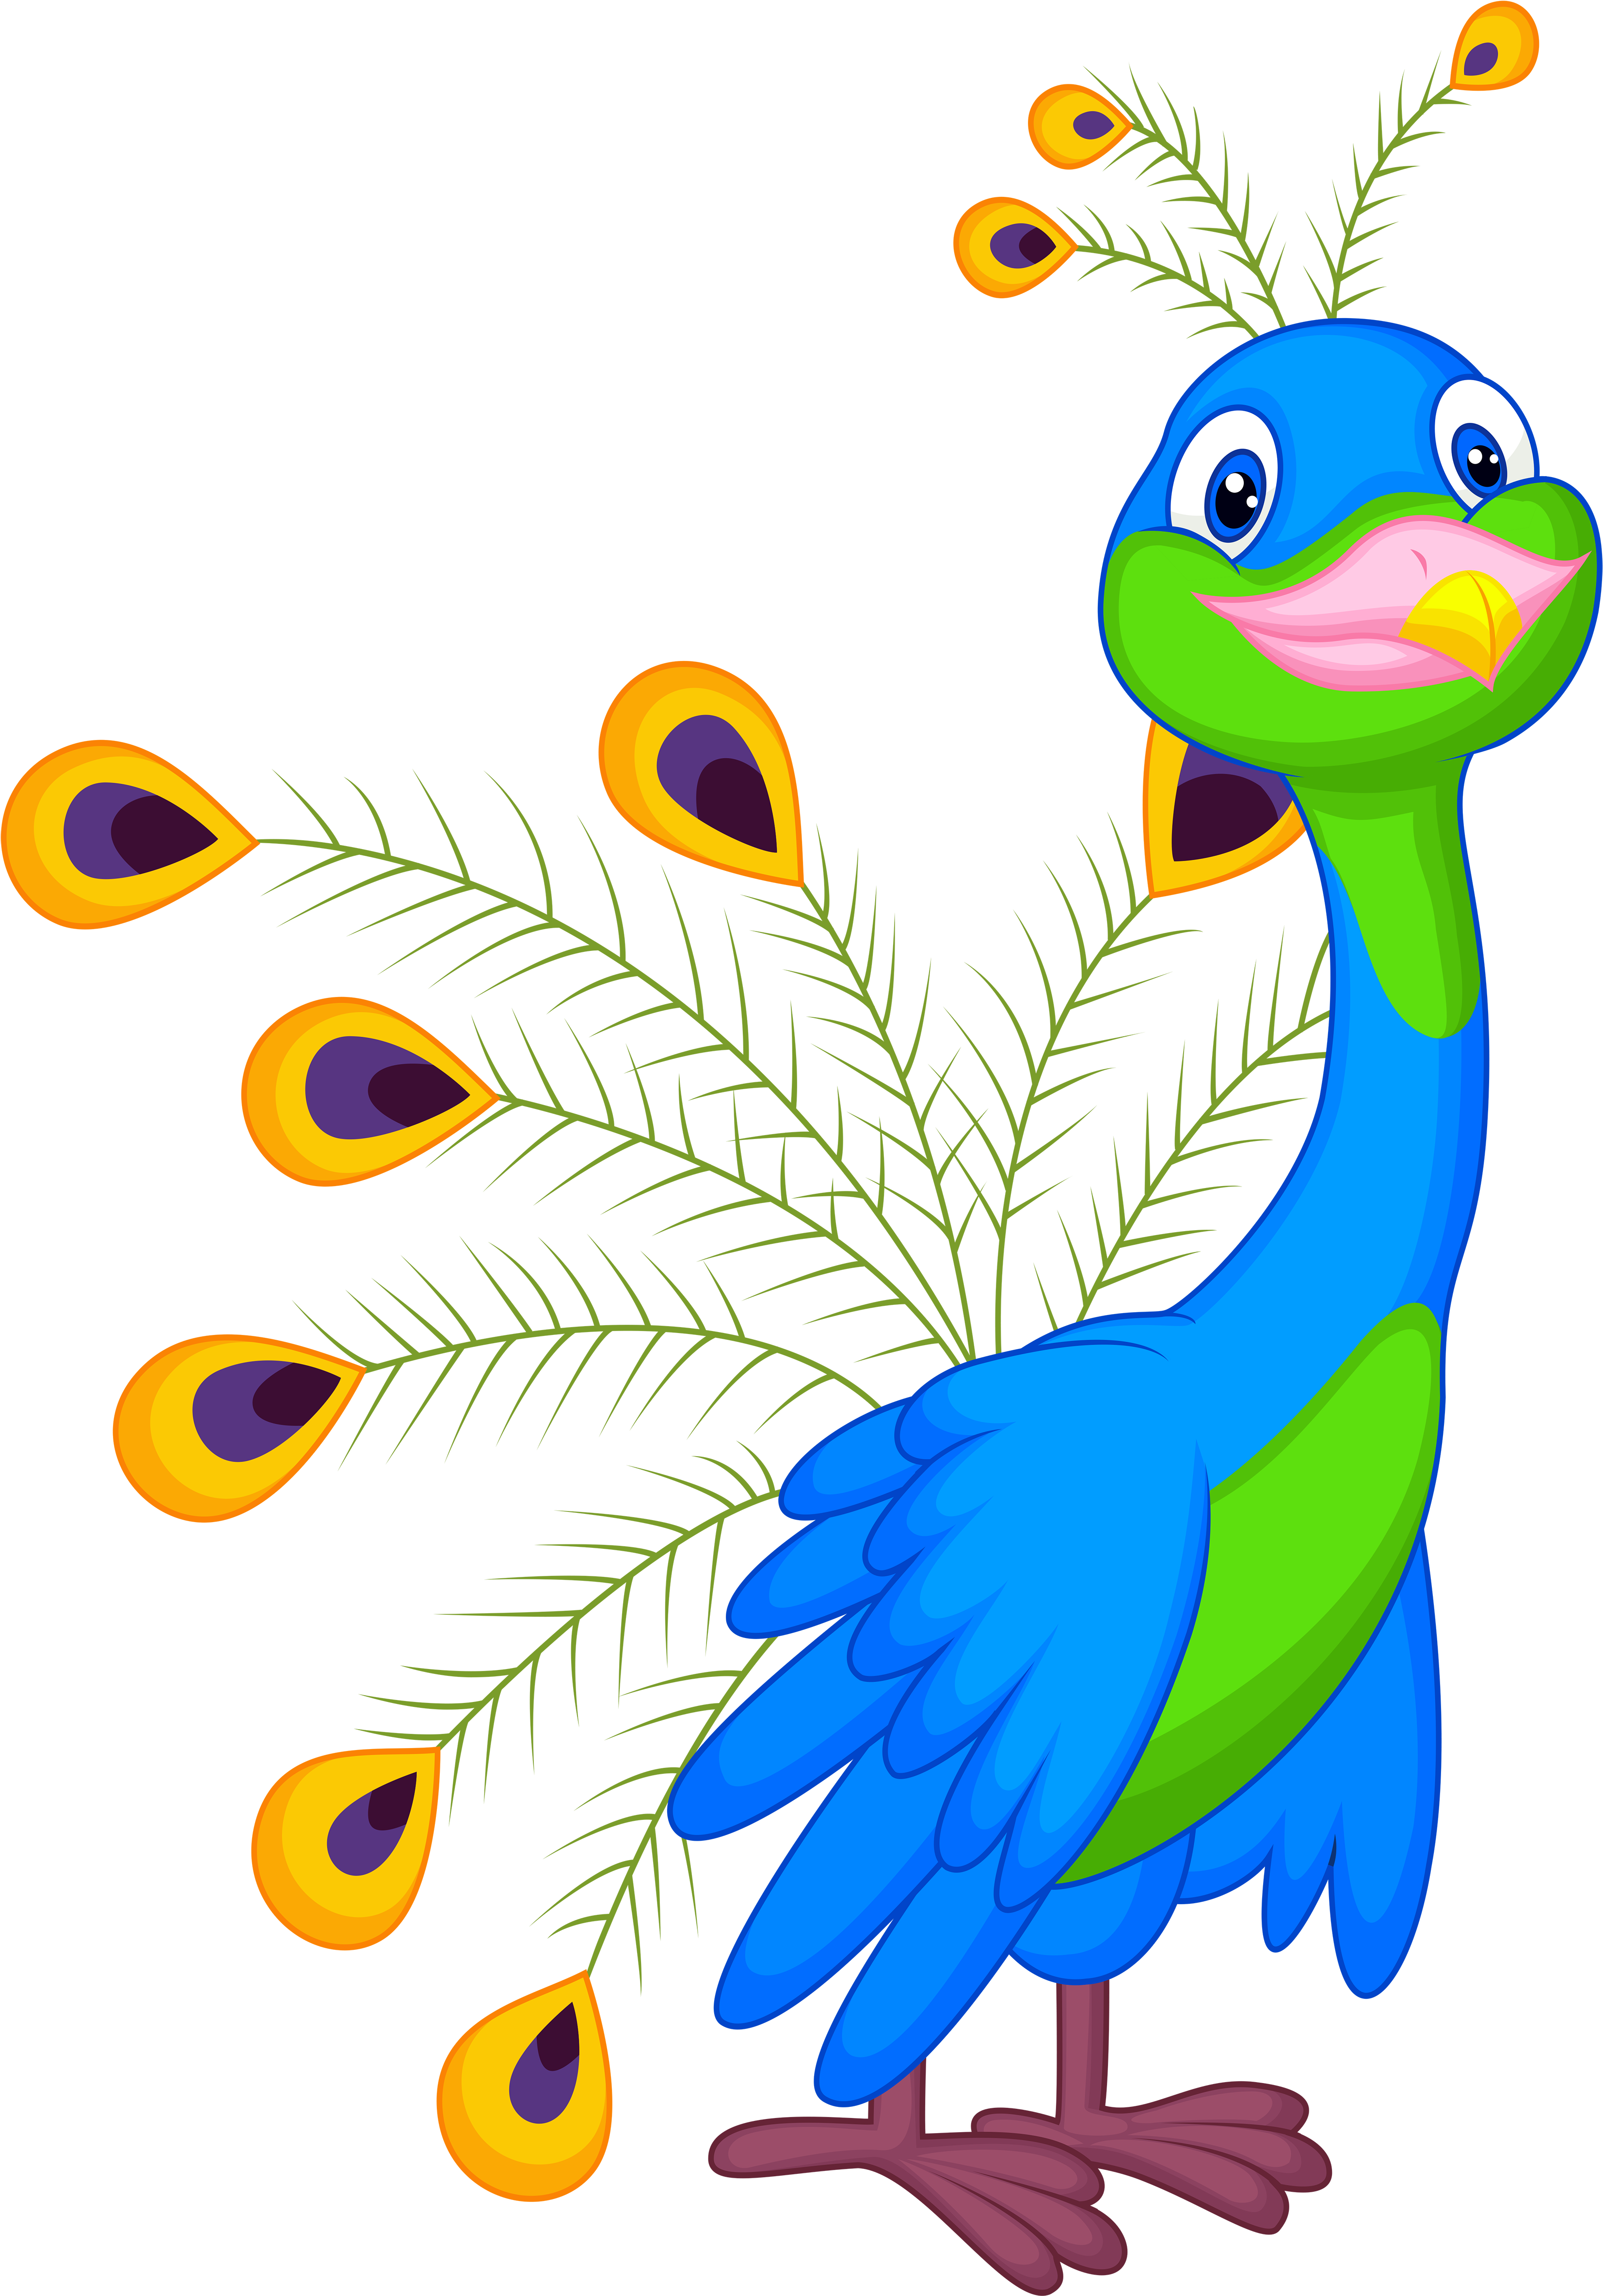 A Cartoon Of A Peacock